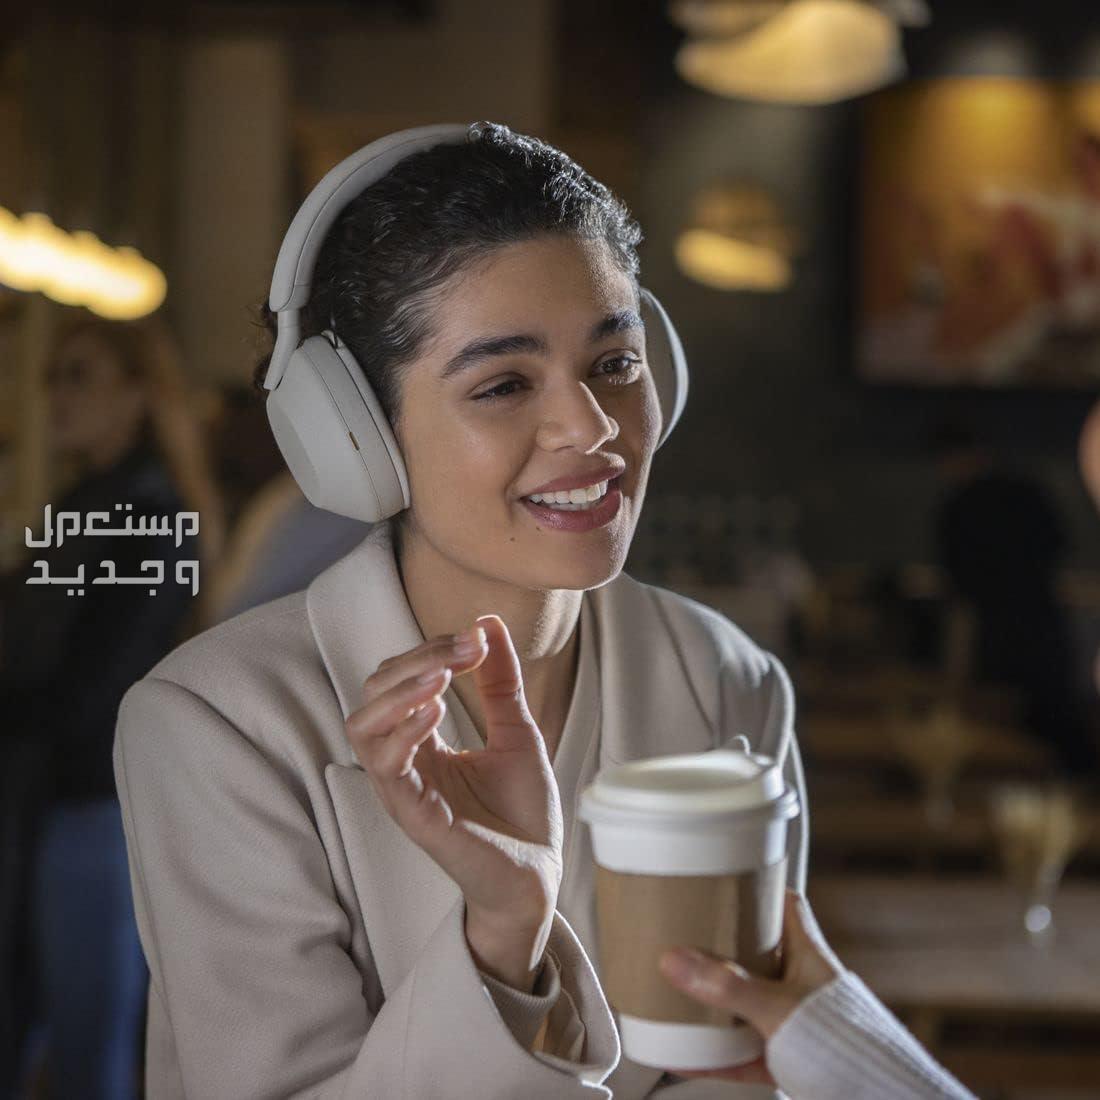 سماعة سوني 5 بتقنية إلغاء الضوضاء المطوّرة  السعر والمميزات الفائقة في مصر سماعة سوني 5 جودة مكالمات رائدة